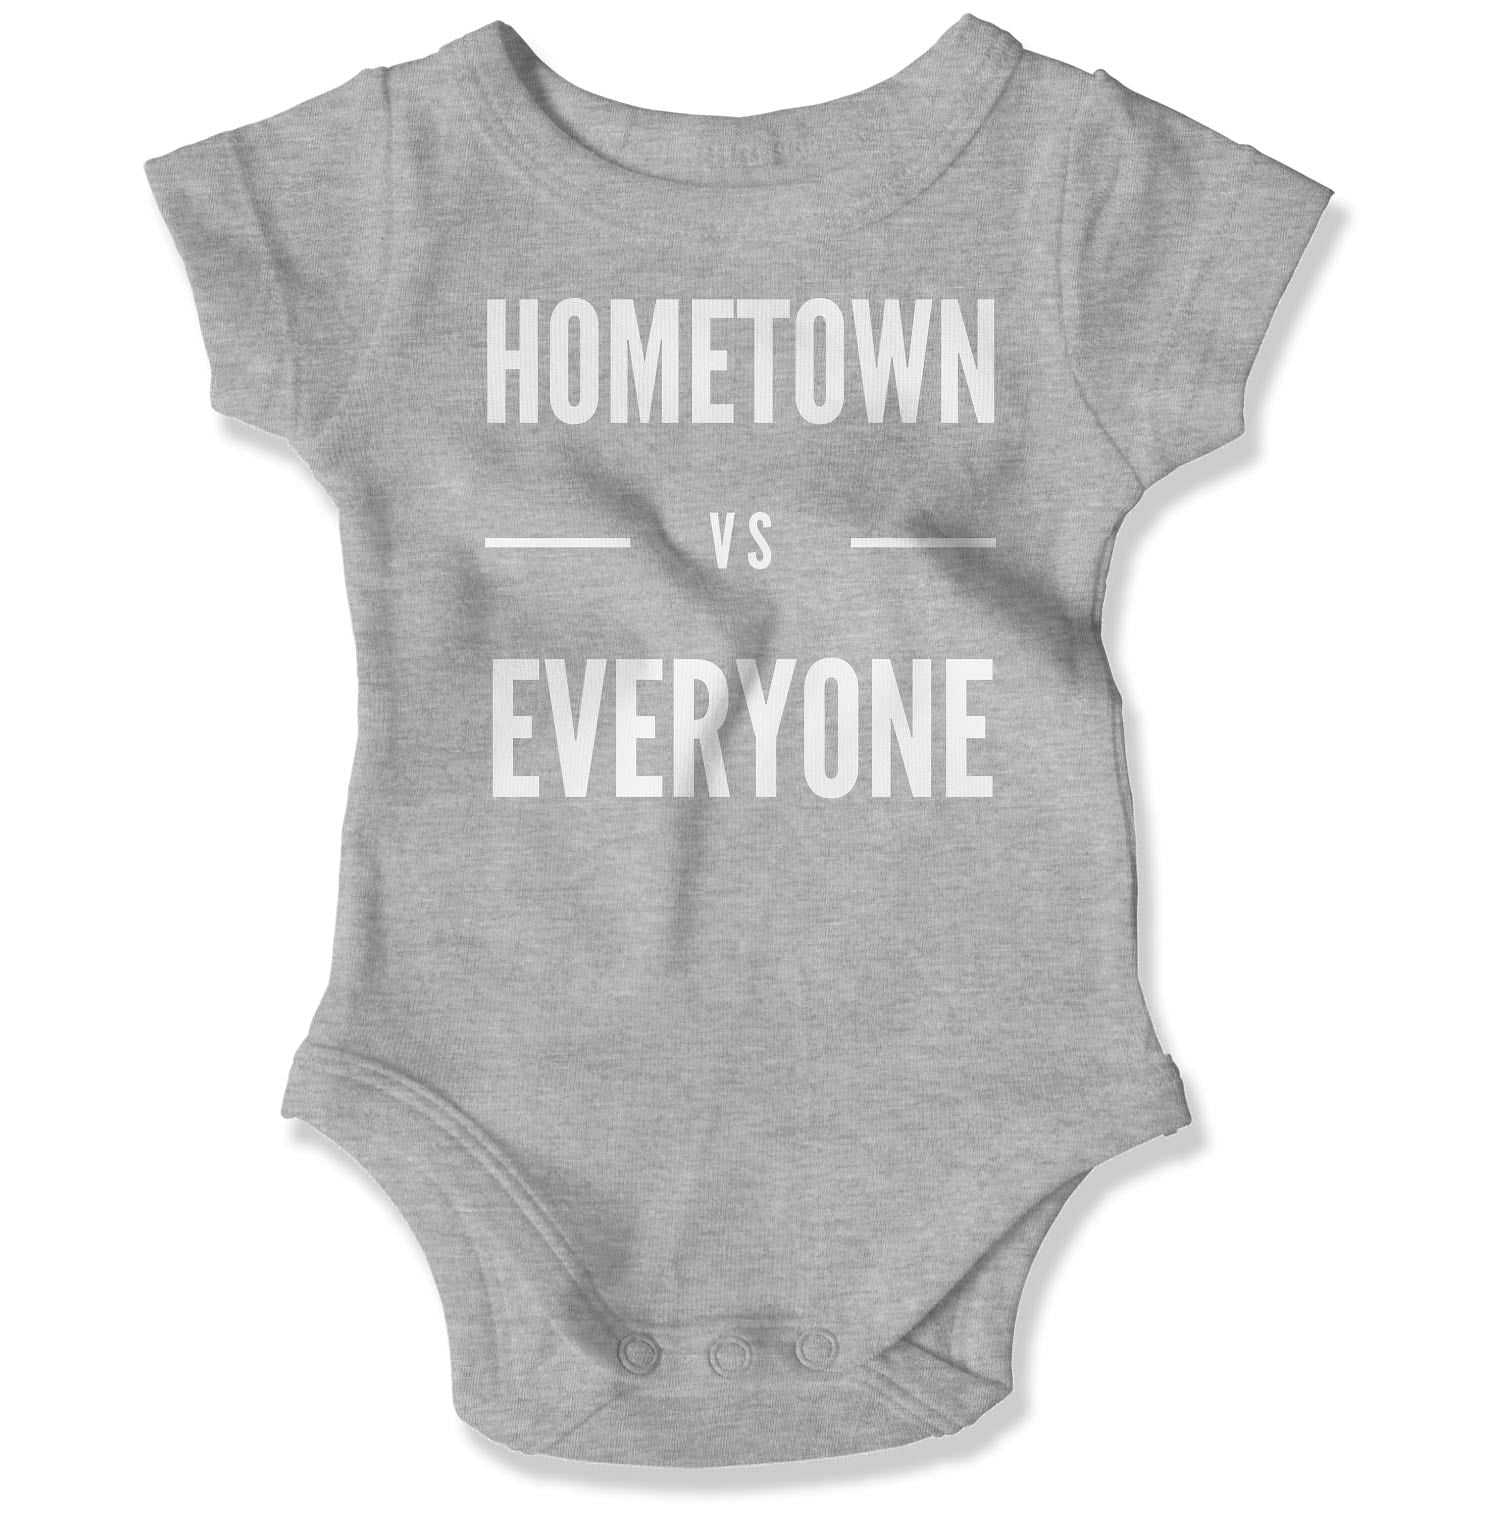 Customizable Hometown vs Everyone Baby Onesie-East Coast AF Apparel